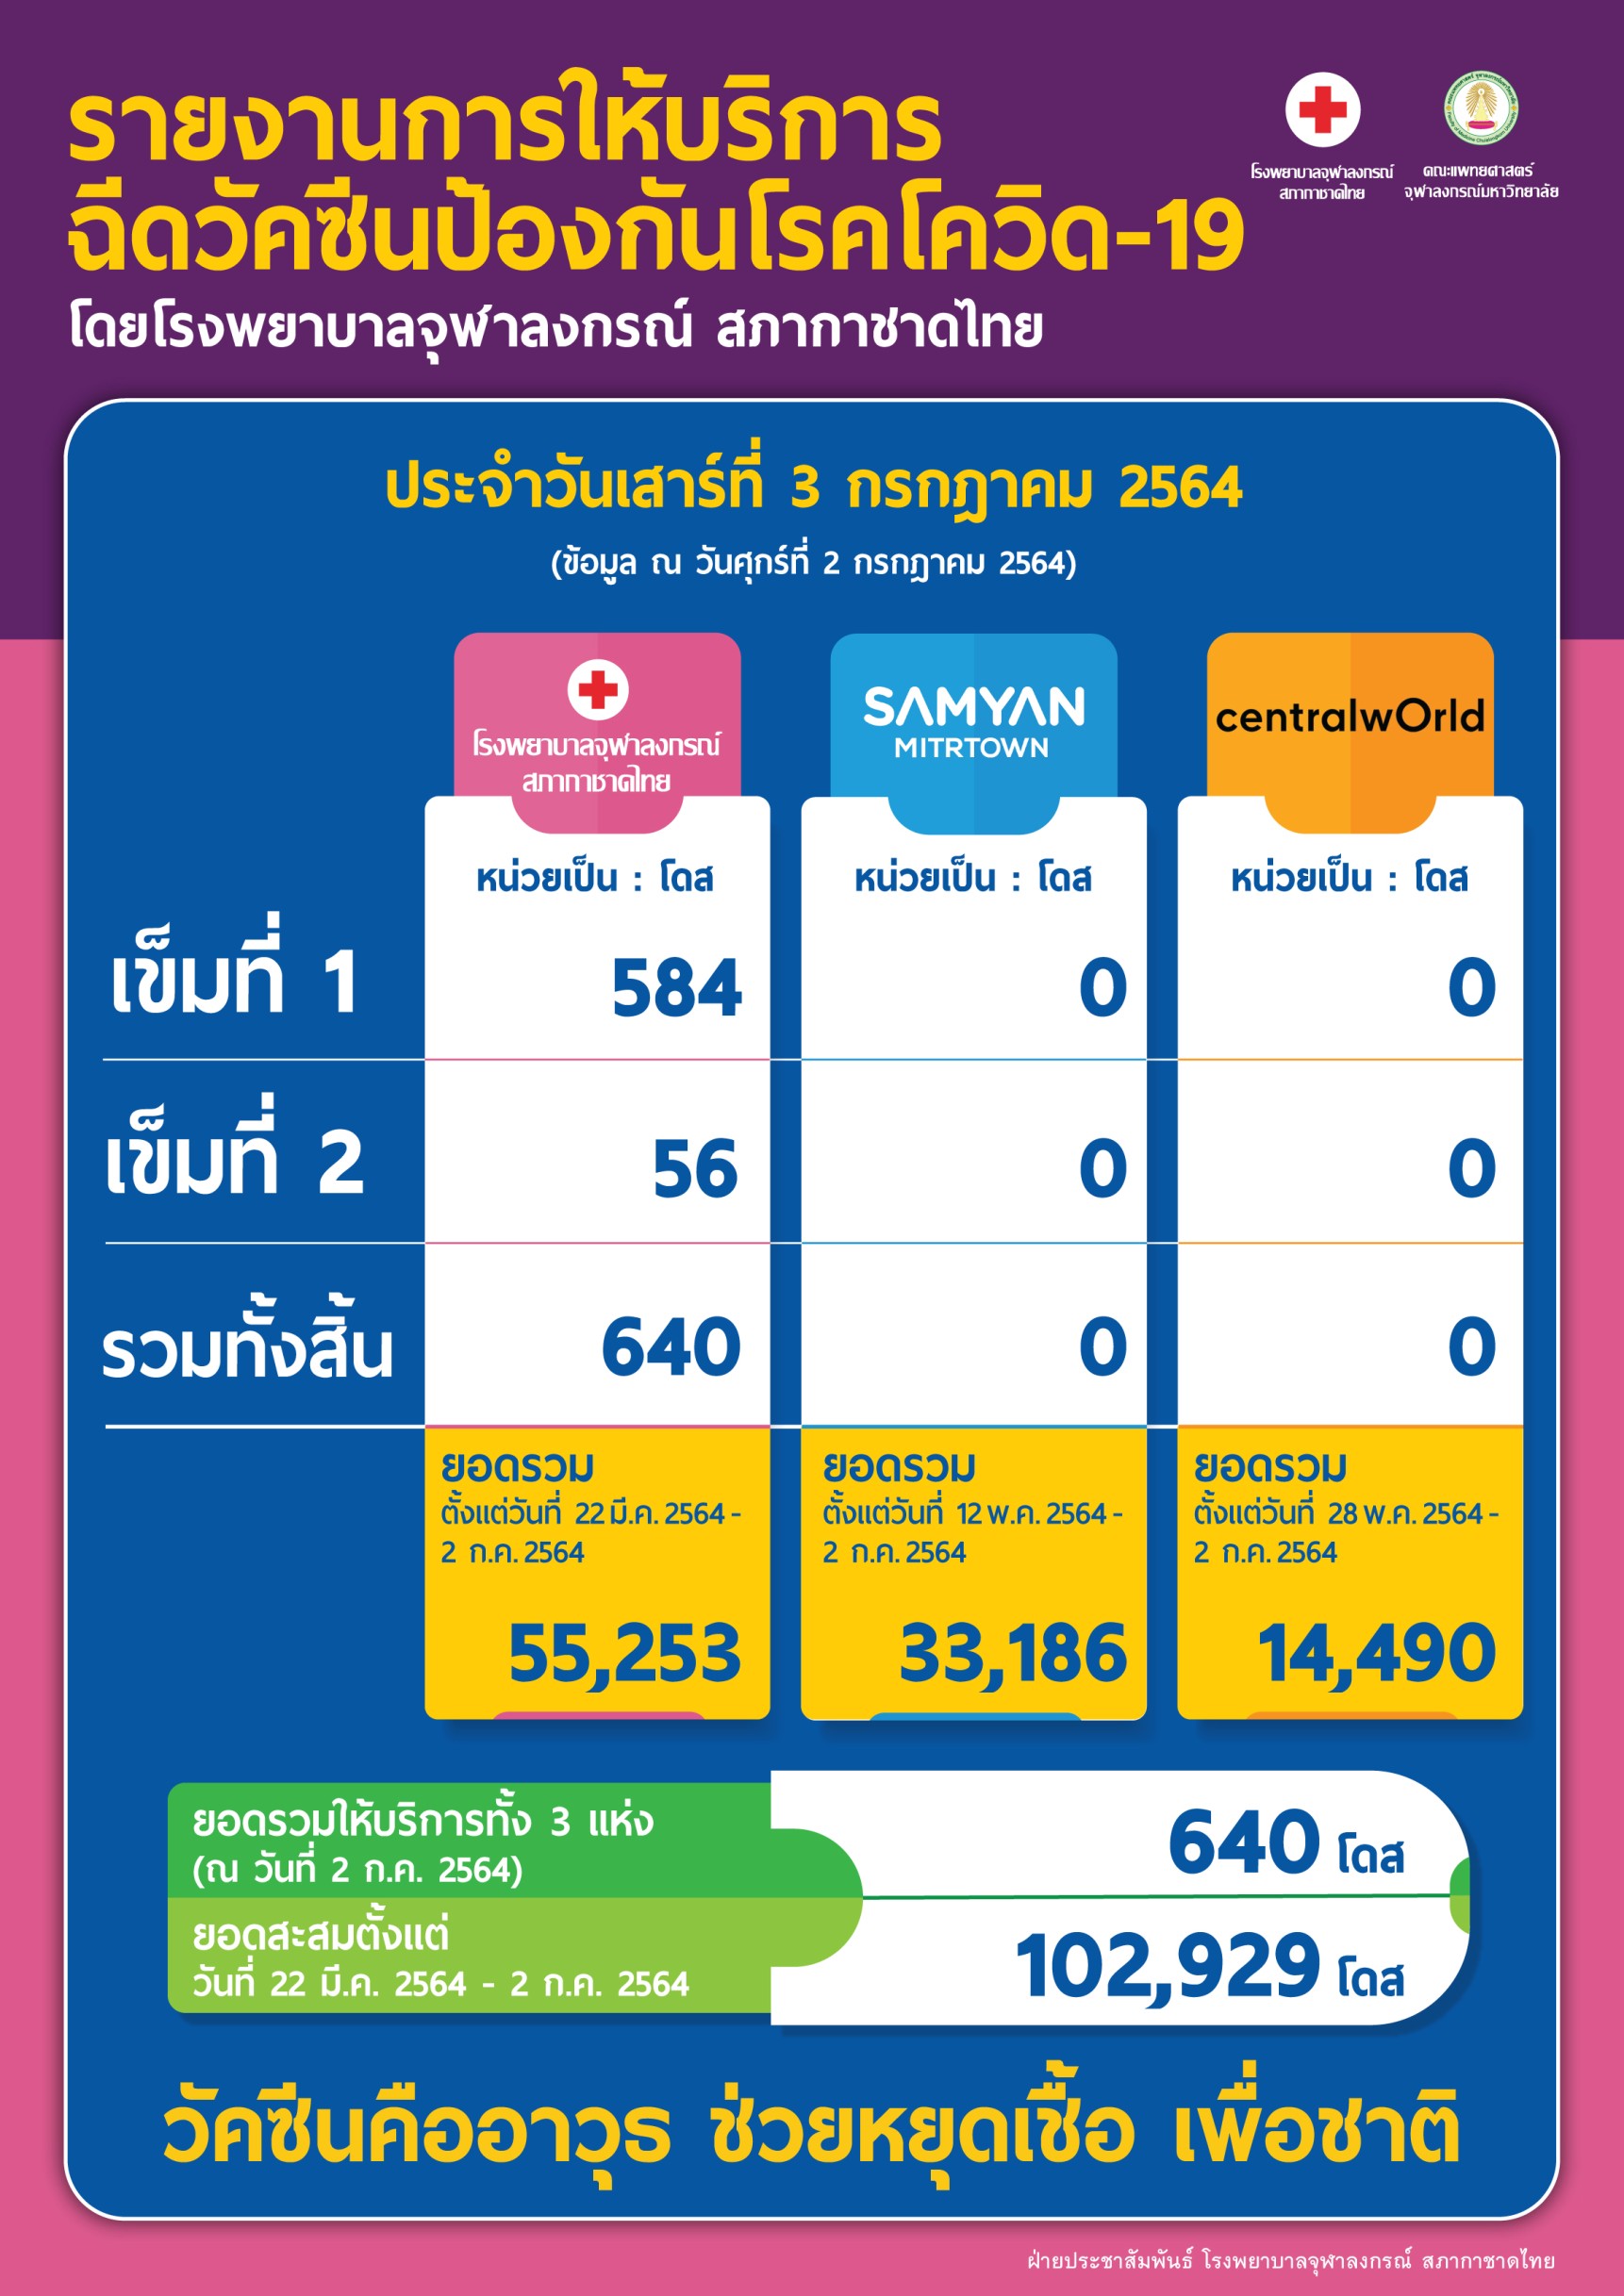 รายงานการให้บริการฉีดวัคซีนป้องกันโรคโควิด-19โดยโรงพยาบาลจุฬาลงกรณ์ สภากาชาดไทย ประจำวันเสาร์ที่ 3 กรกฎาคม 2564